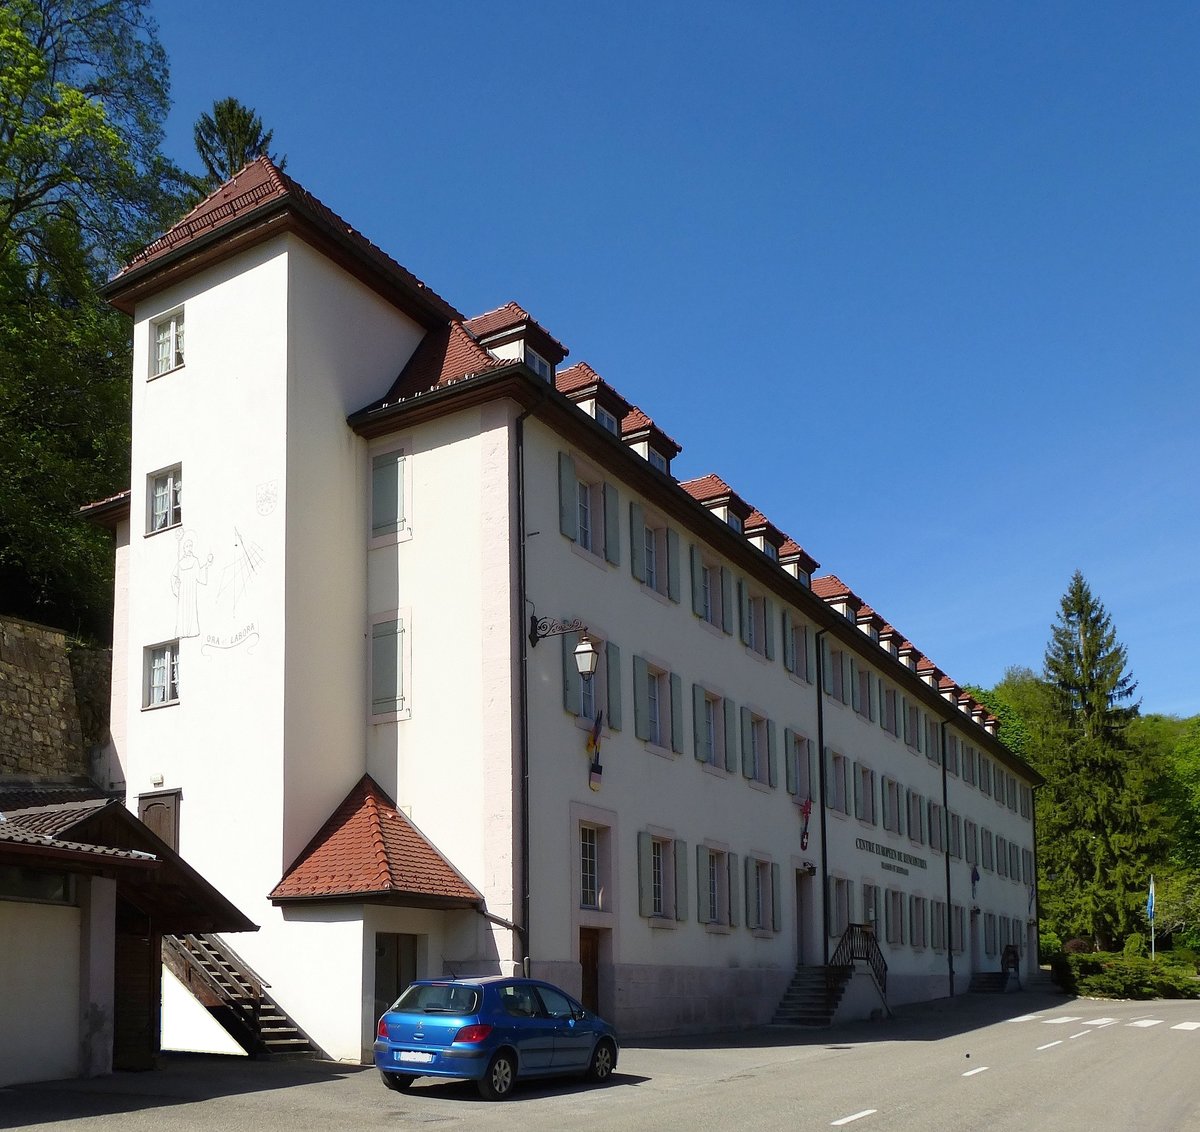 Lucelle, das erhaltene Klostergebude der ehemaligen Zisterzienserabtei Ltzel, begerbergt seit 1961 das Familienheim und Feriencentrum  CERL   Mai 2017